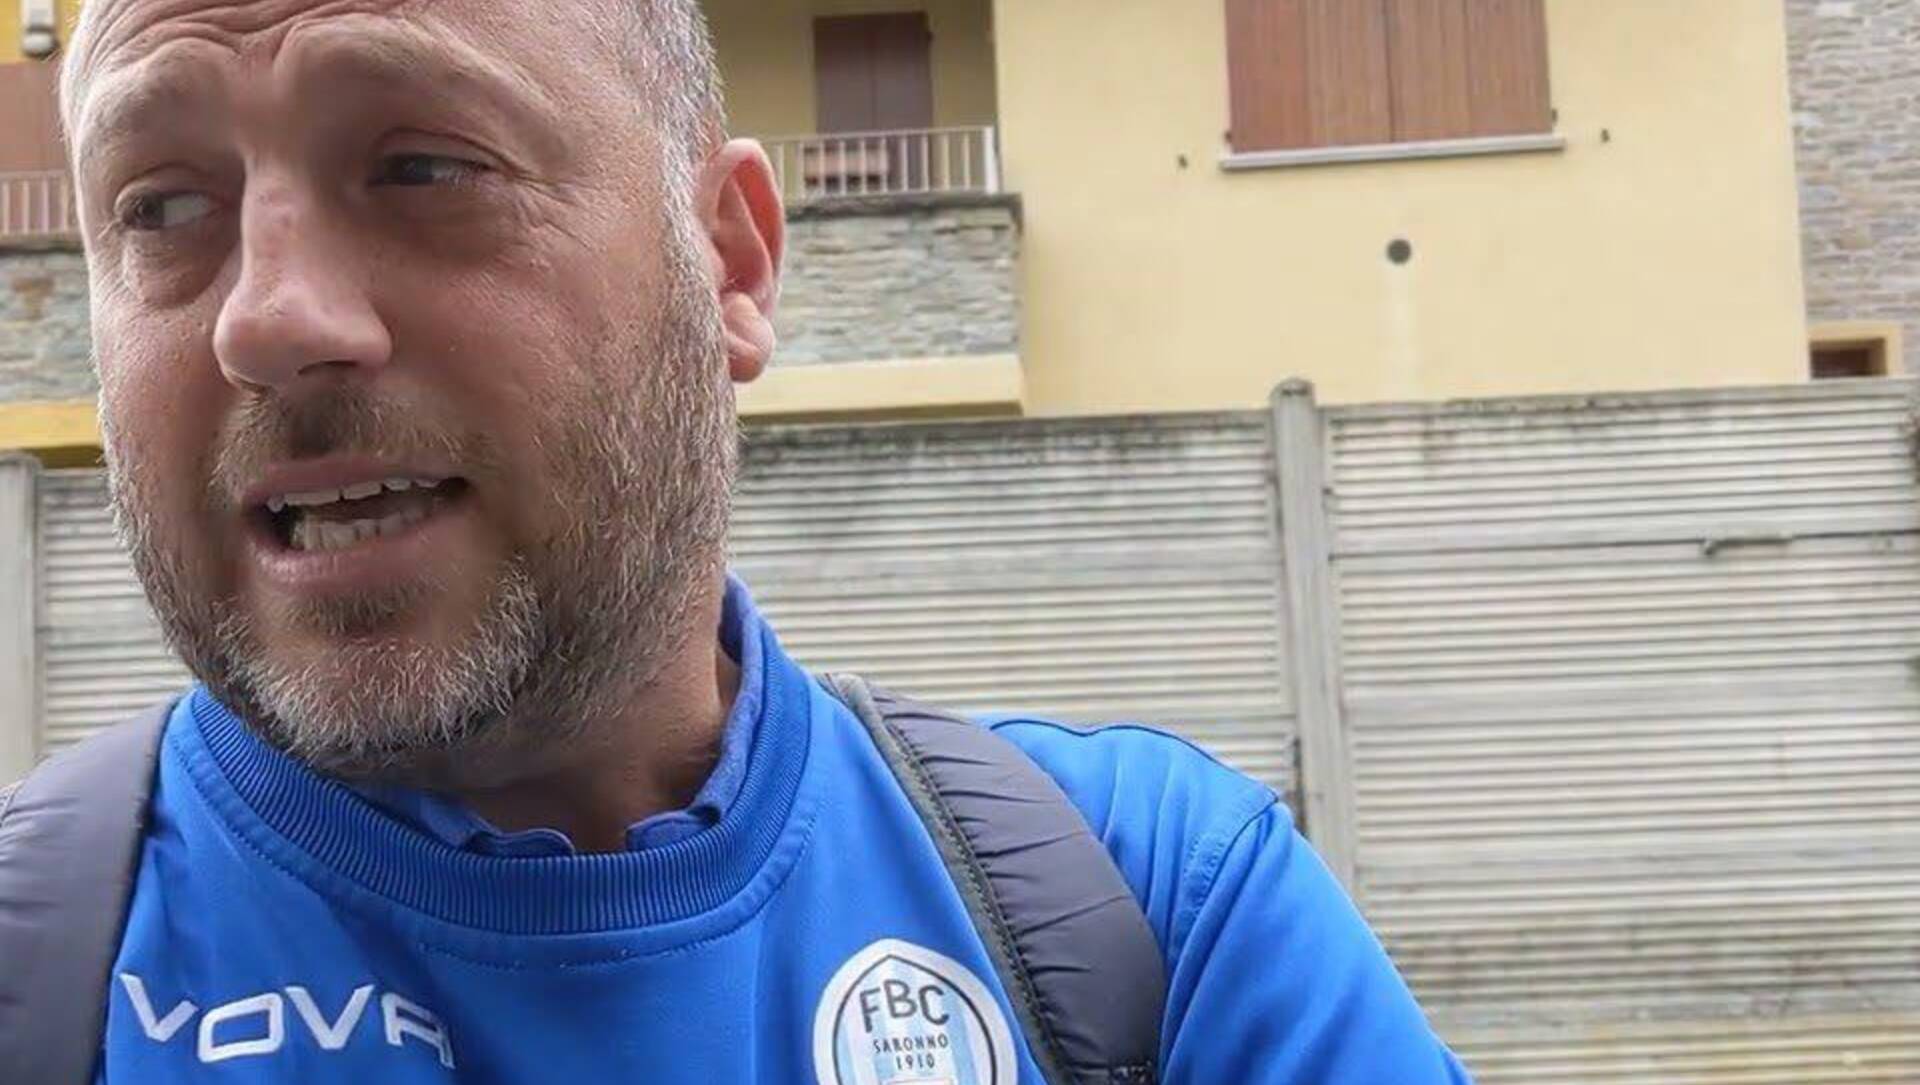 Calcio Promozione, Base 96-Fbc Saronno parla Tricarico: “Mentalità giusta”